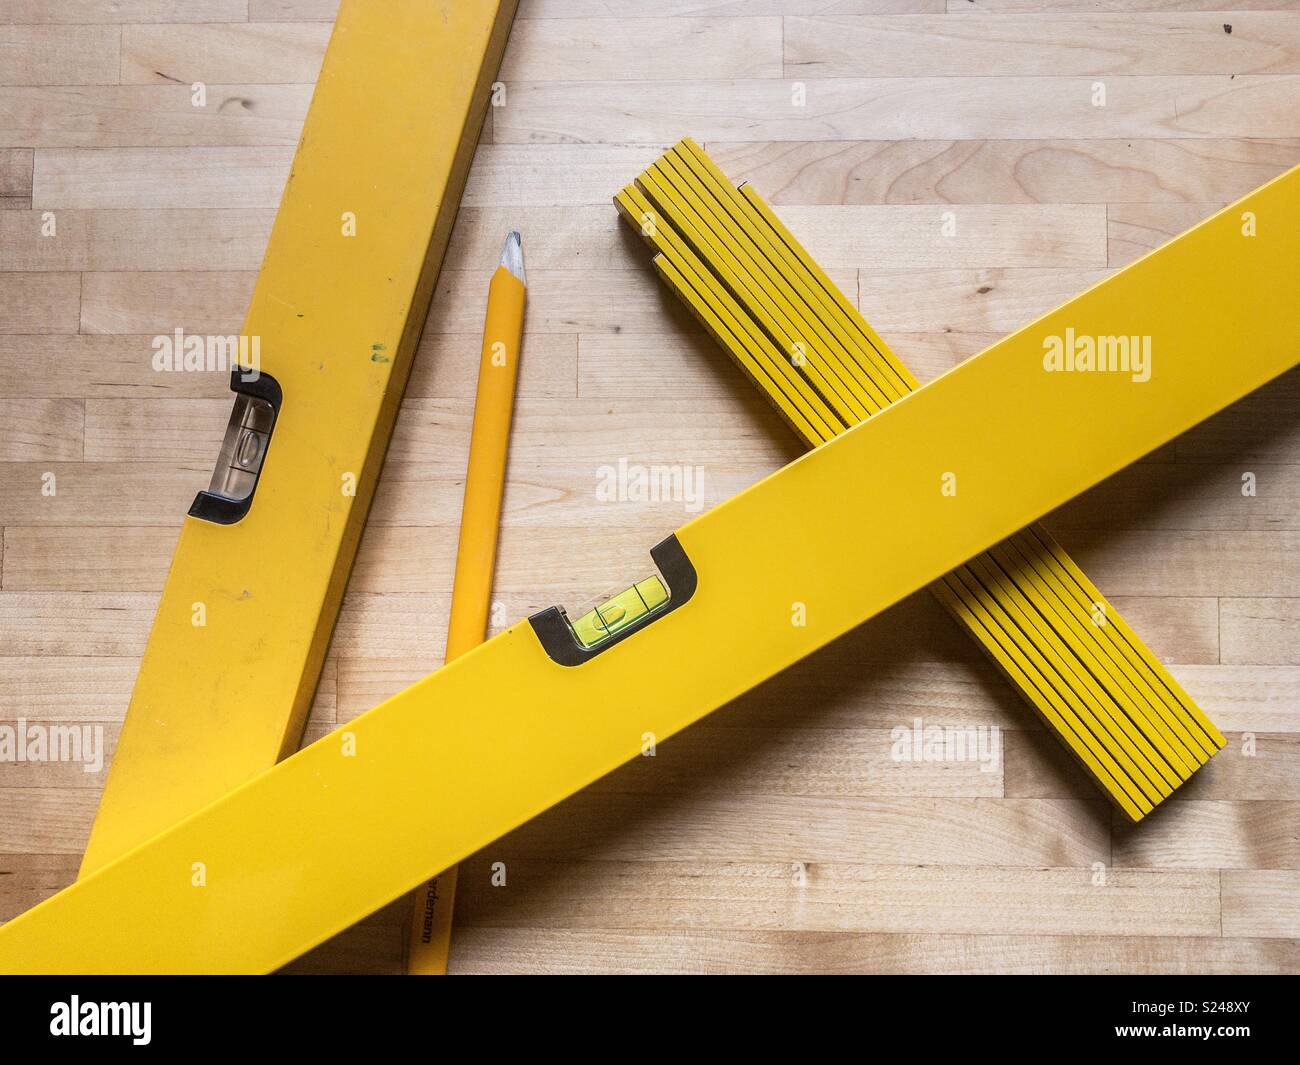 Yellow tools Stock Photo